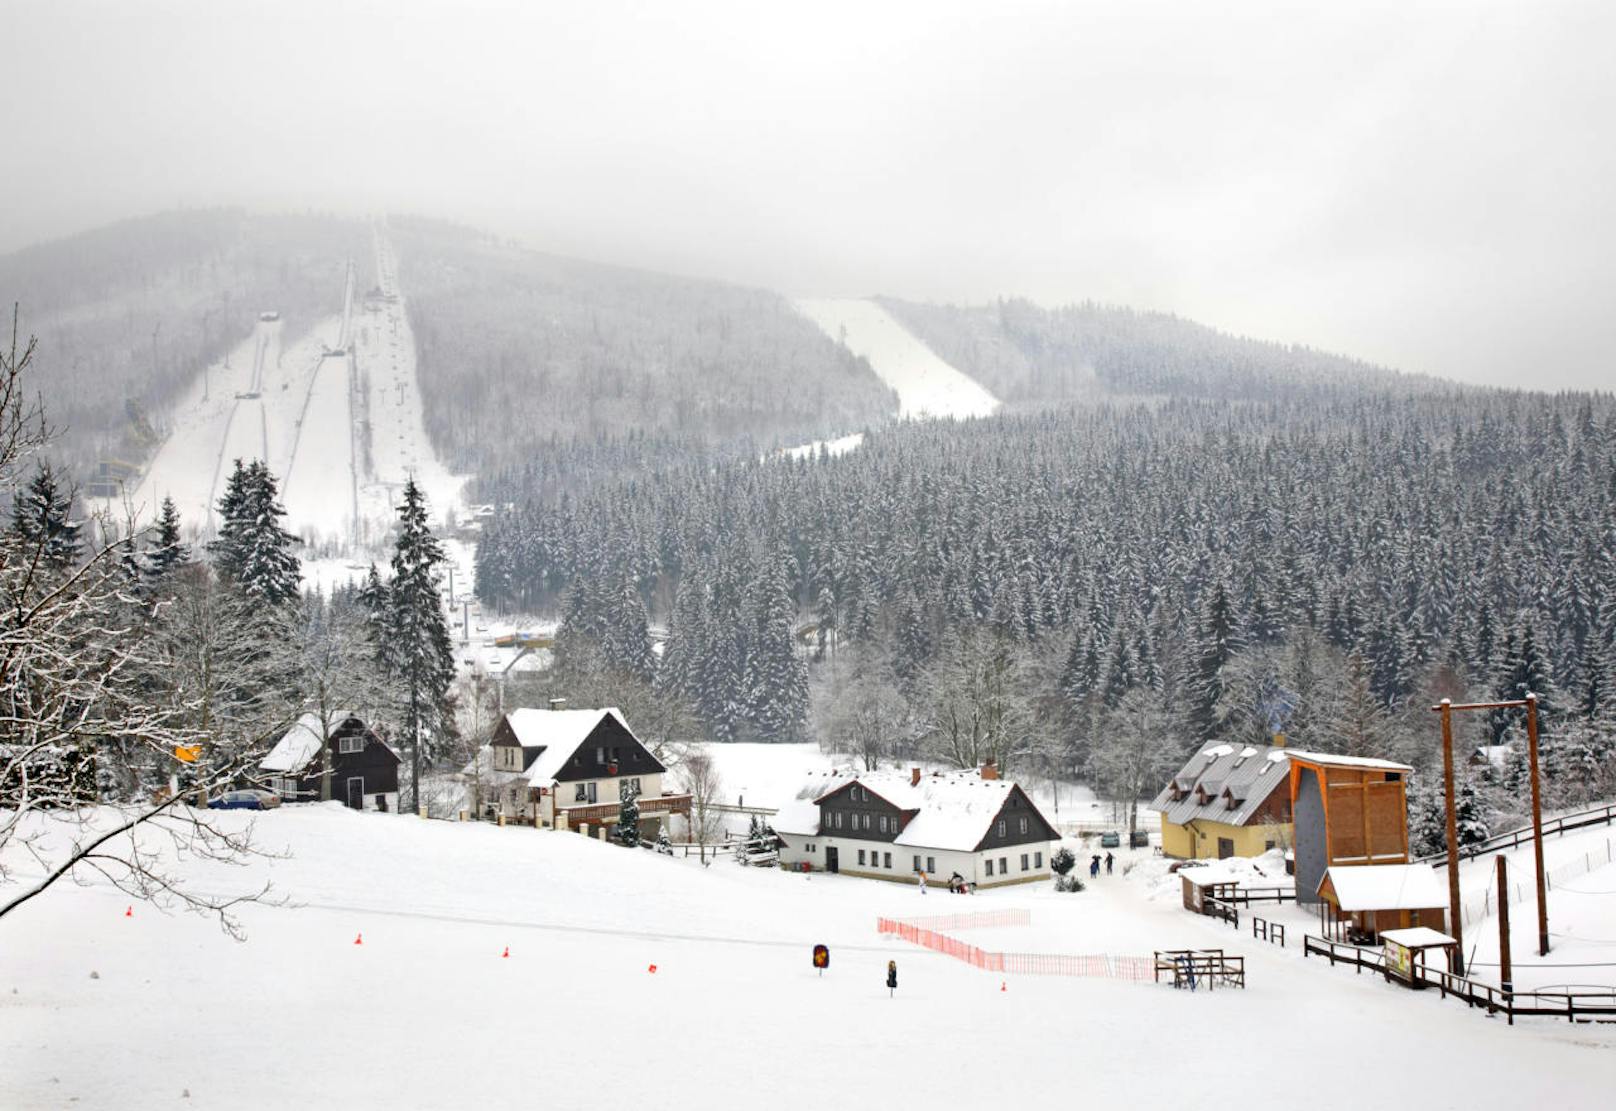 <b>Platz 9: Harrachov, Tschechien</b>
Durchschnittliche Unterkunftspreis für vier Personen: <b>100,25 Euro</b>
Preis für Skipass: <b>26,75 Euro</b>